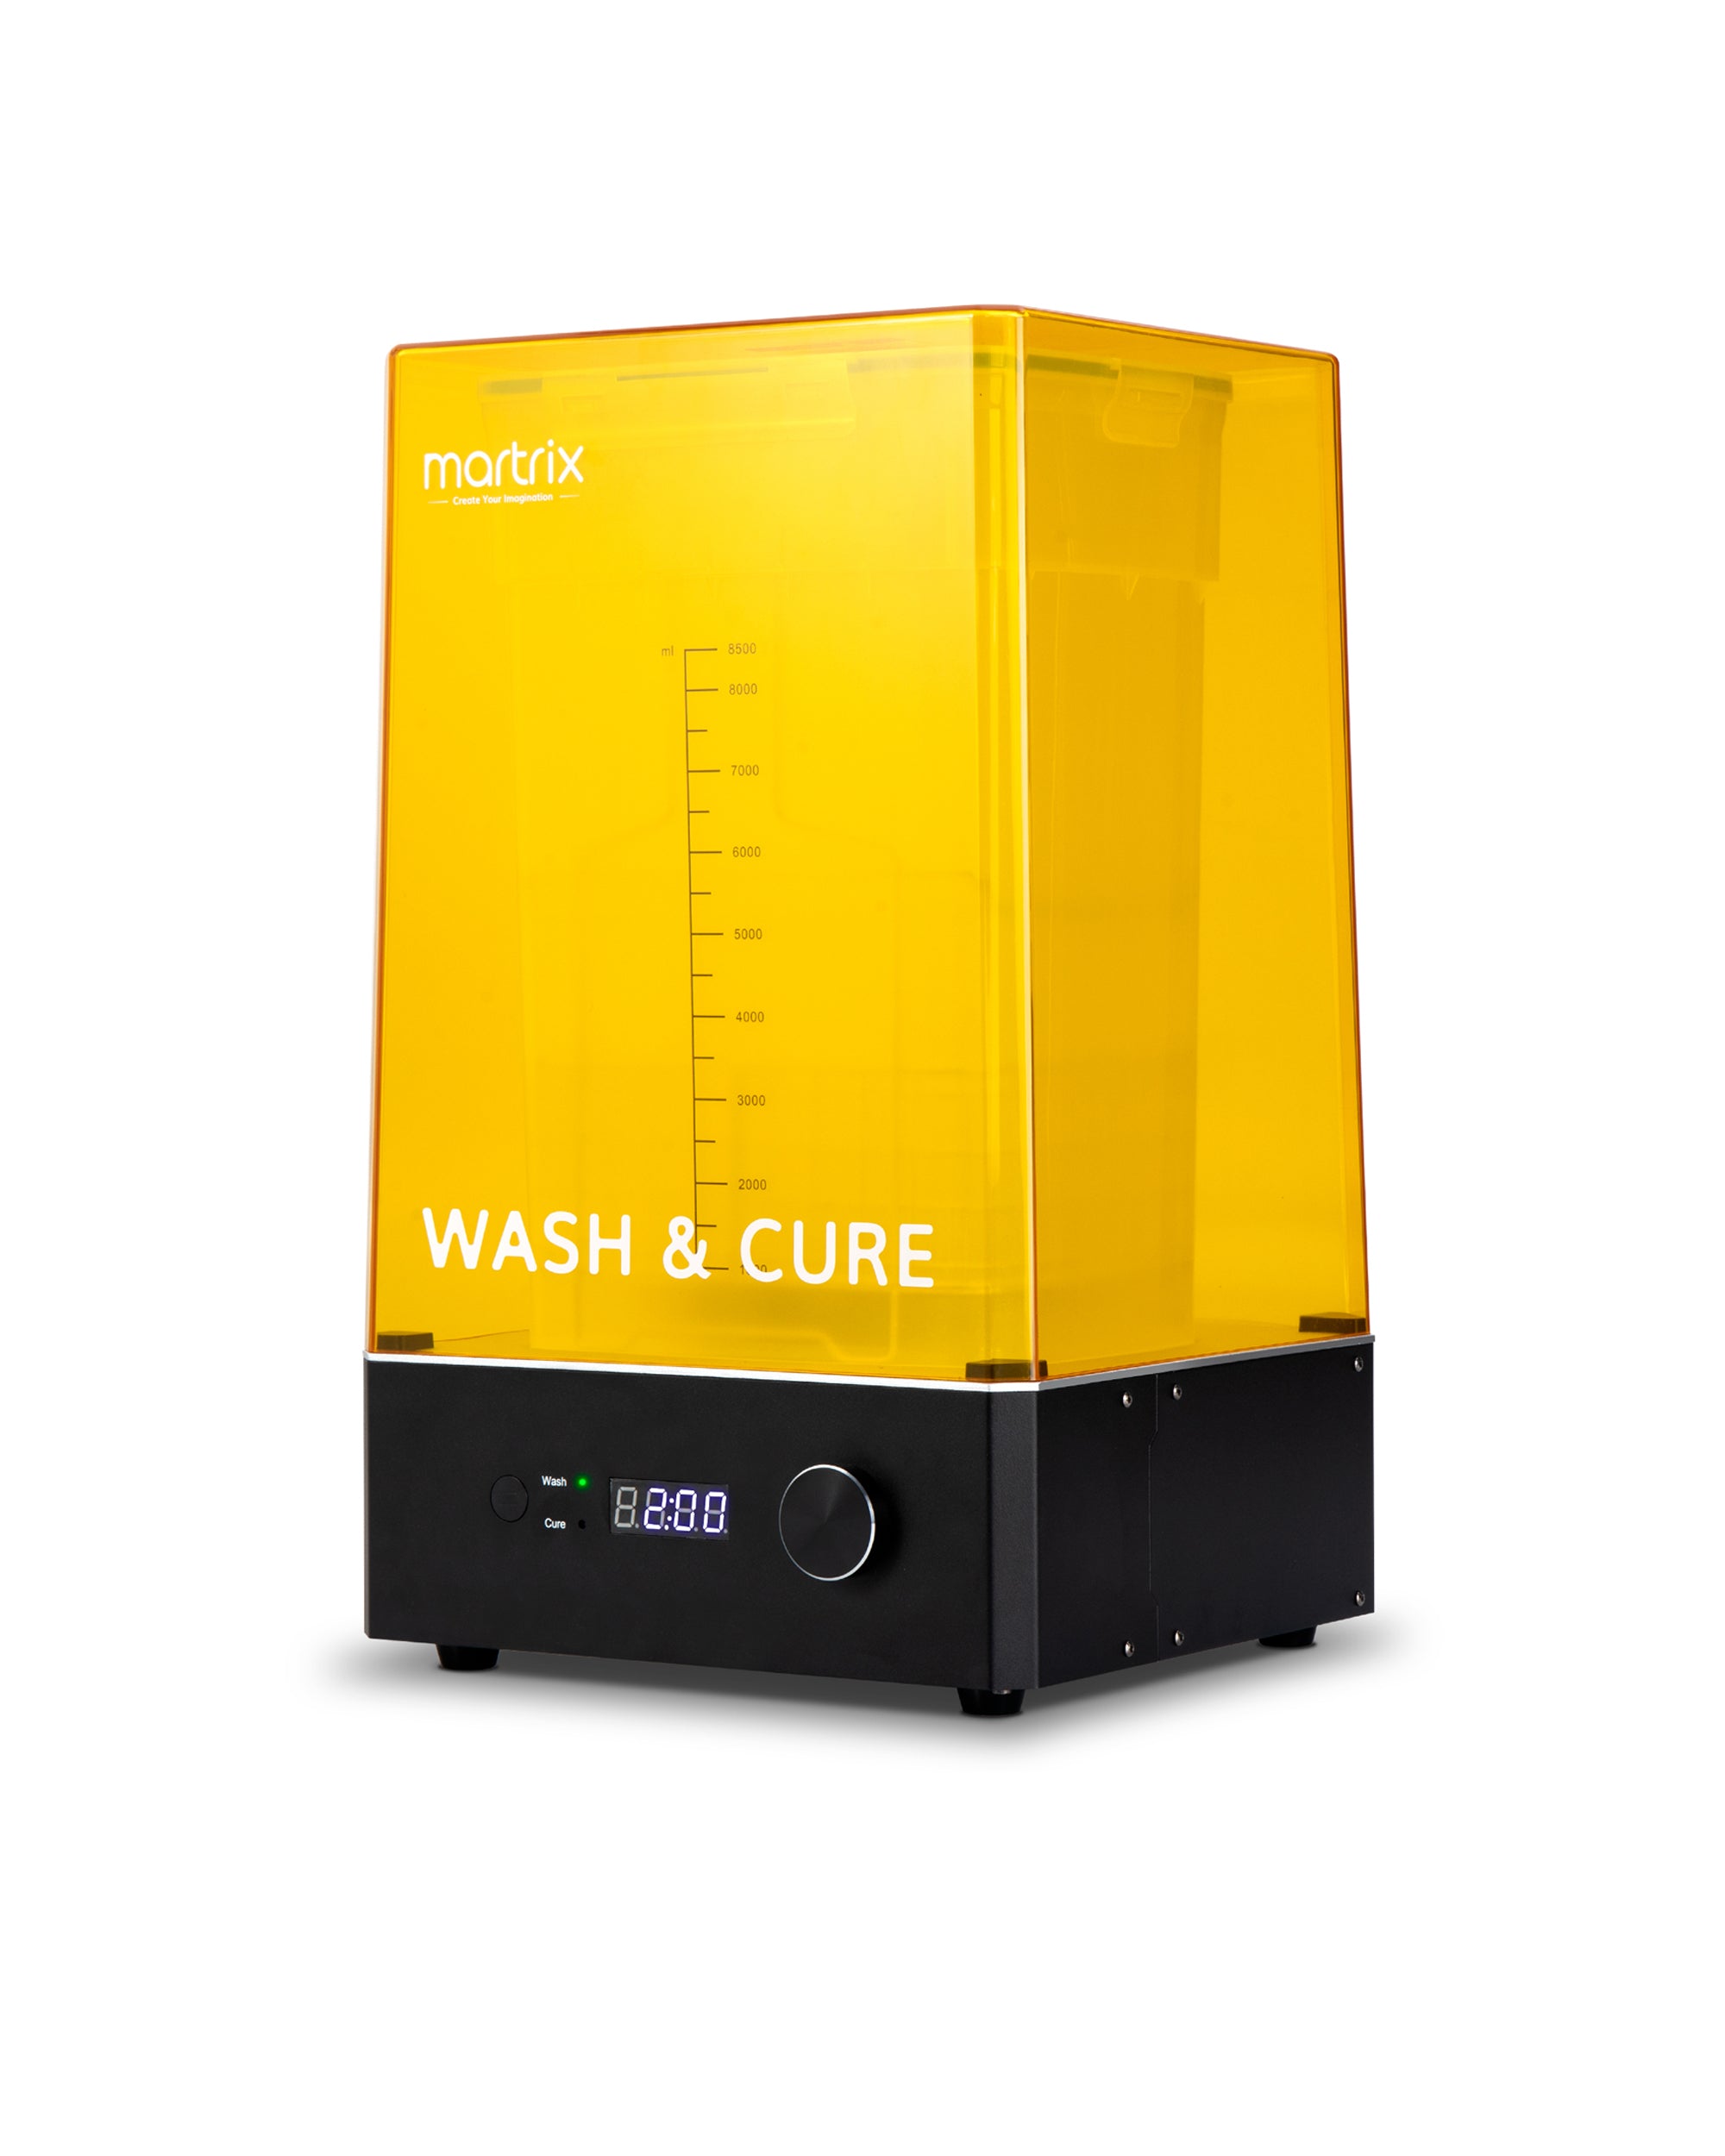 Martrix Wash & Cure Machine